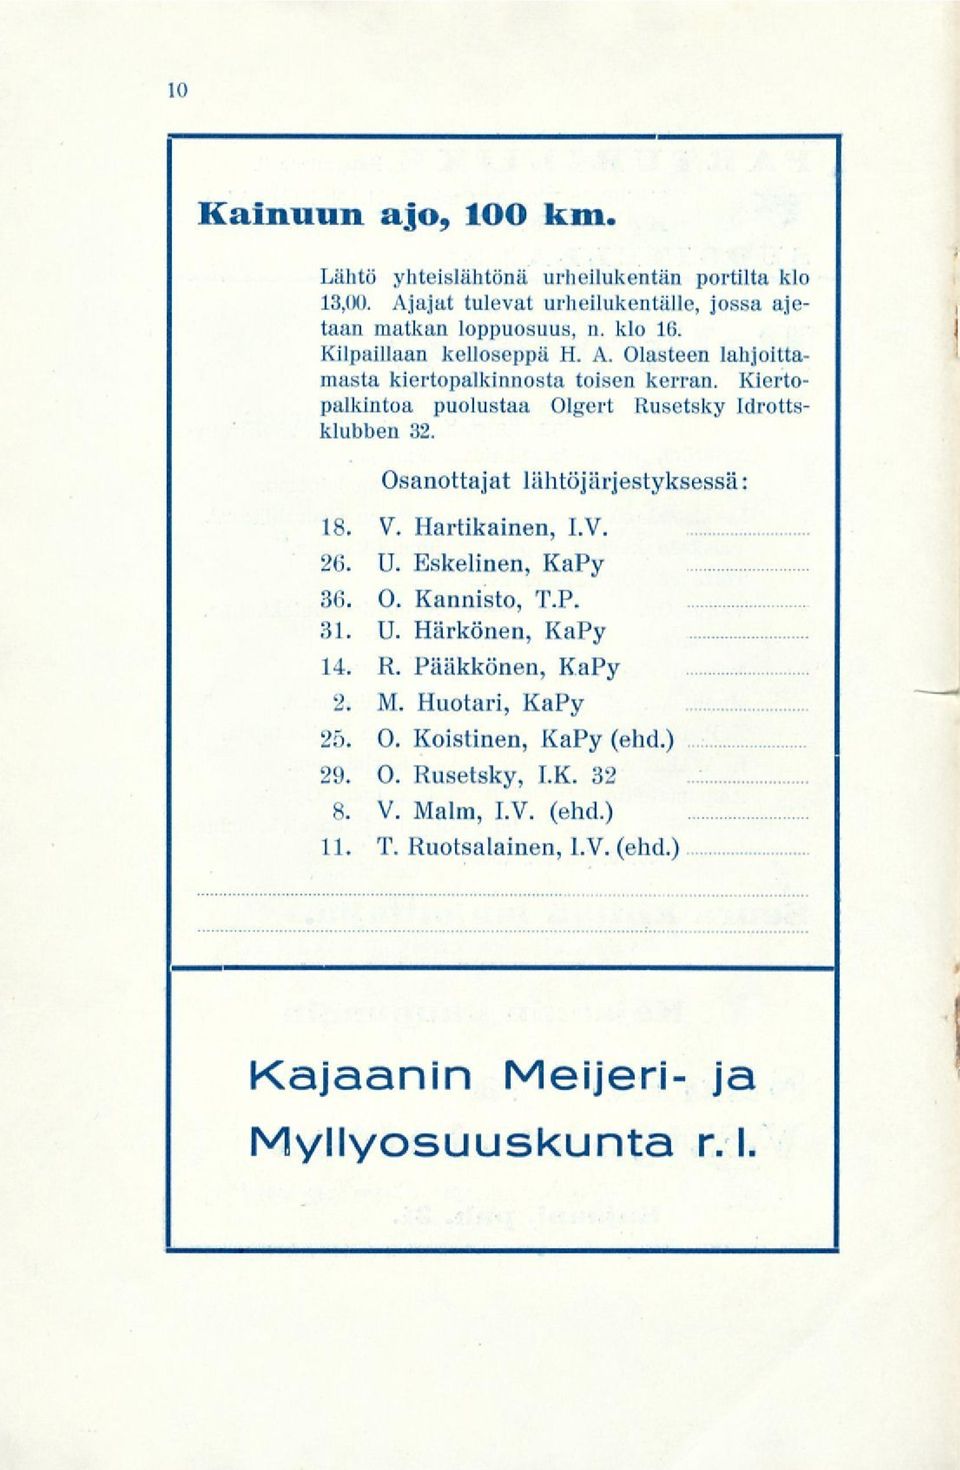 Osanottajat lähtöjärjestyksessä: 18. V. Hartikainen, I.V. 26. U. Eskelinen, KaPy 36. O. Kannisto, T.P. 81. U. Härkönen, KaPy 14. R. Pääkkönen, KaPy 2. M.